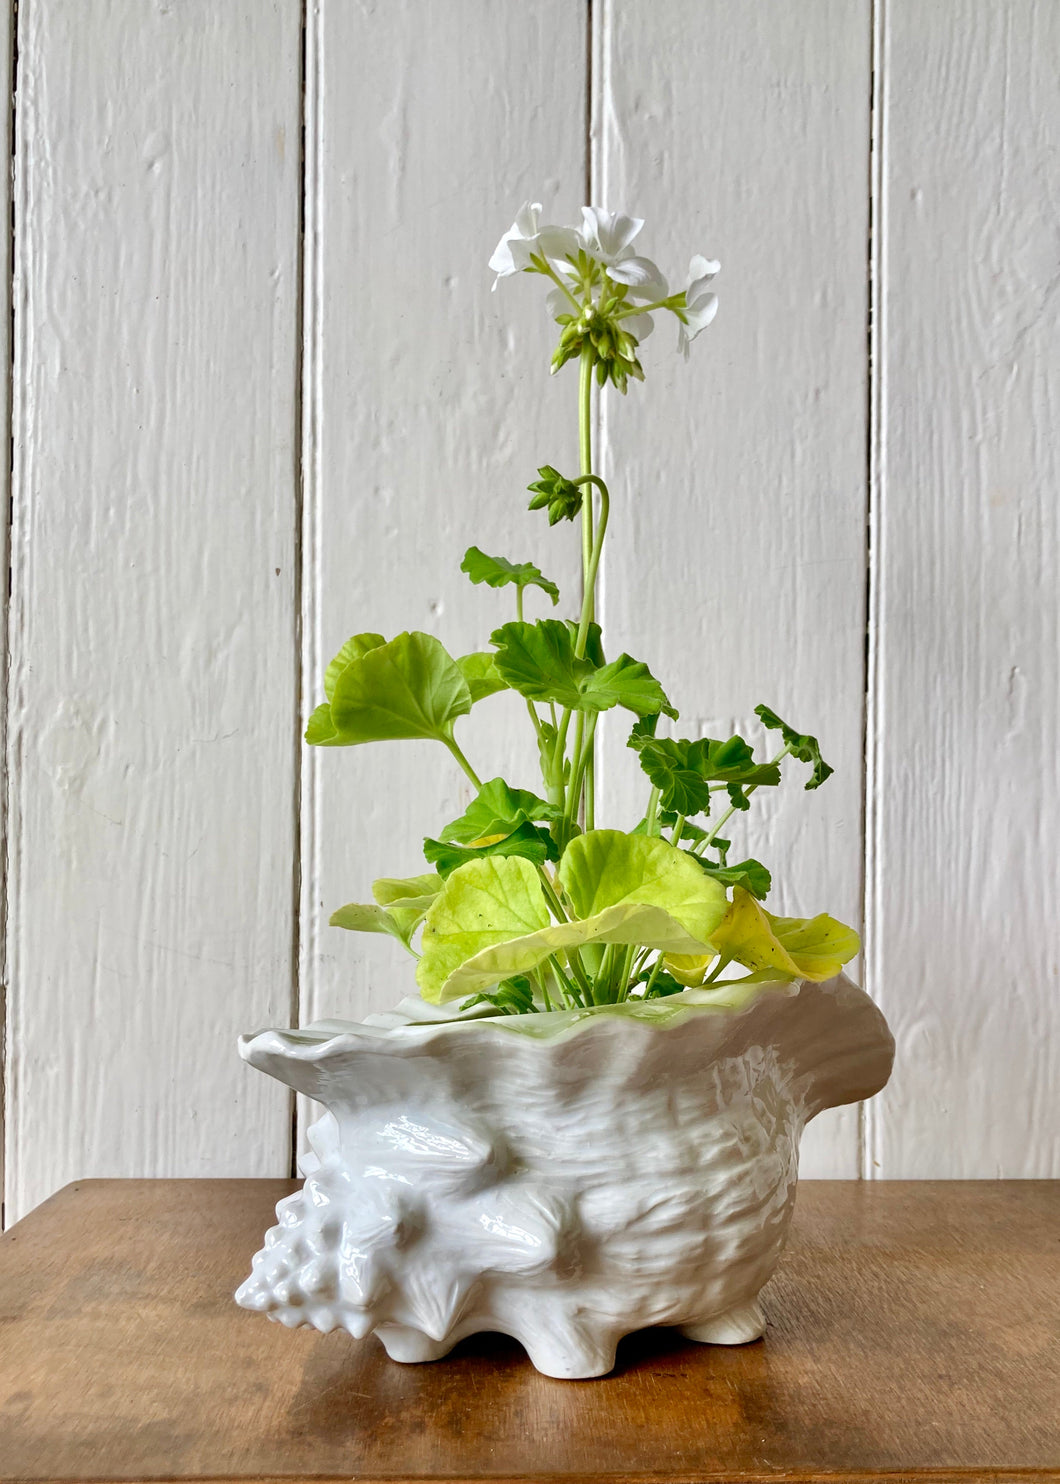 Medium sized white shell vase/planter